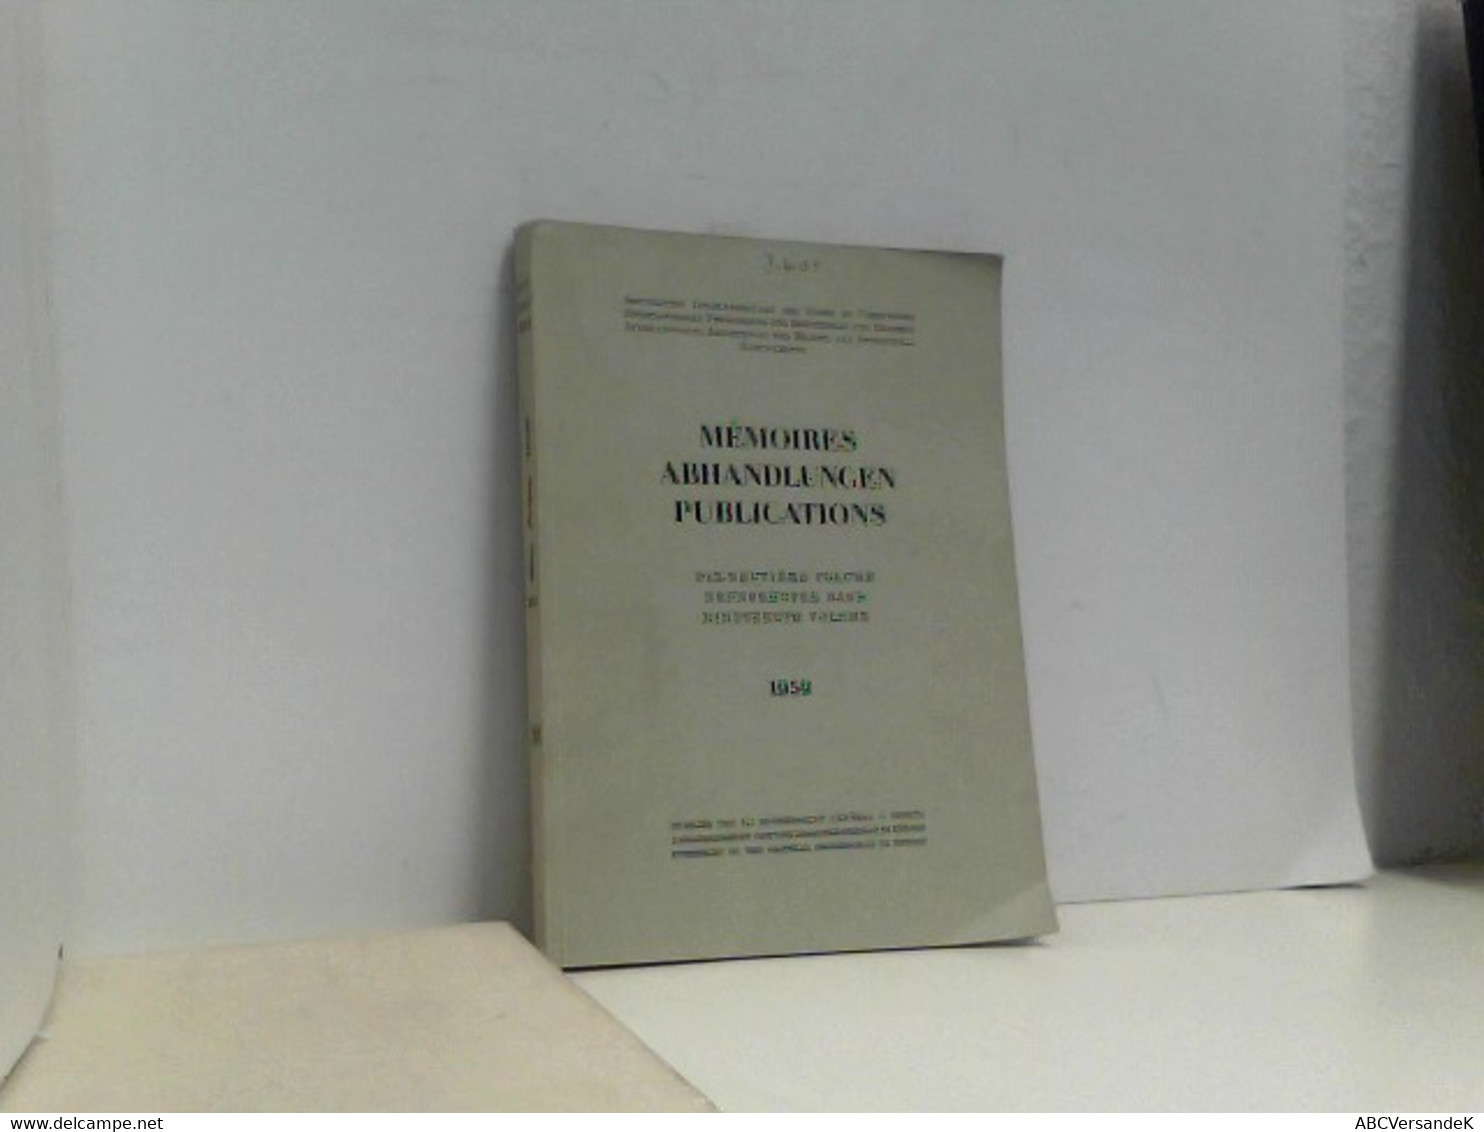 Memoires Abhandlungen Publications. Neunzehnter Band 1959 - Technique